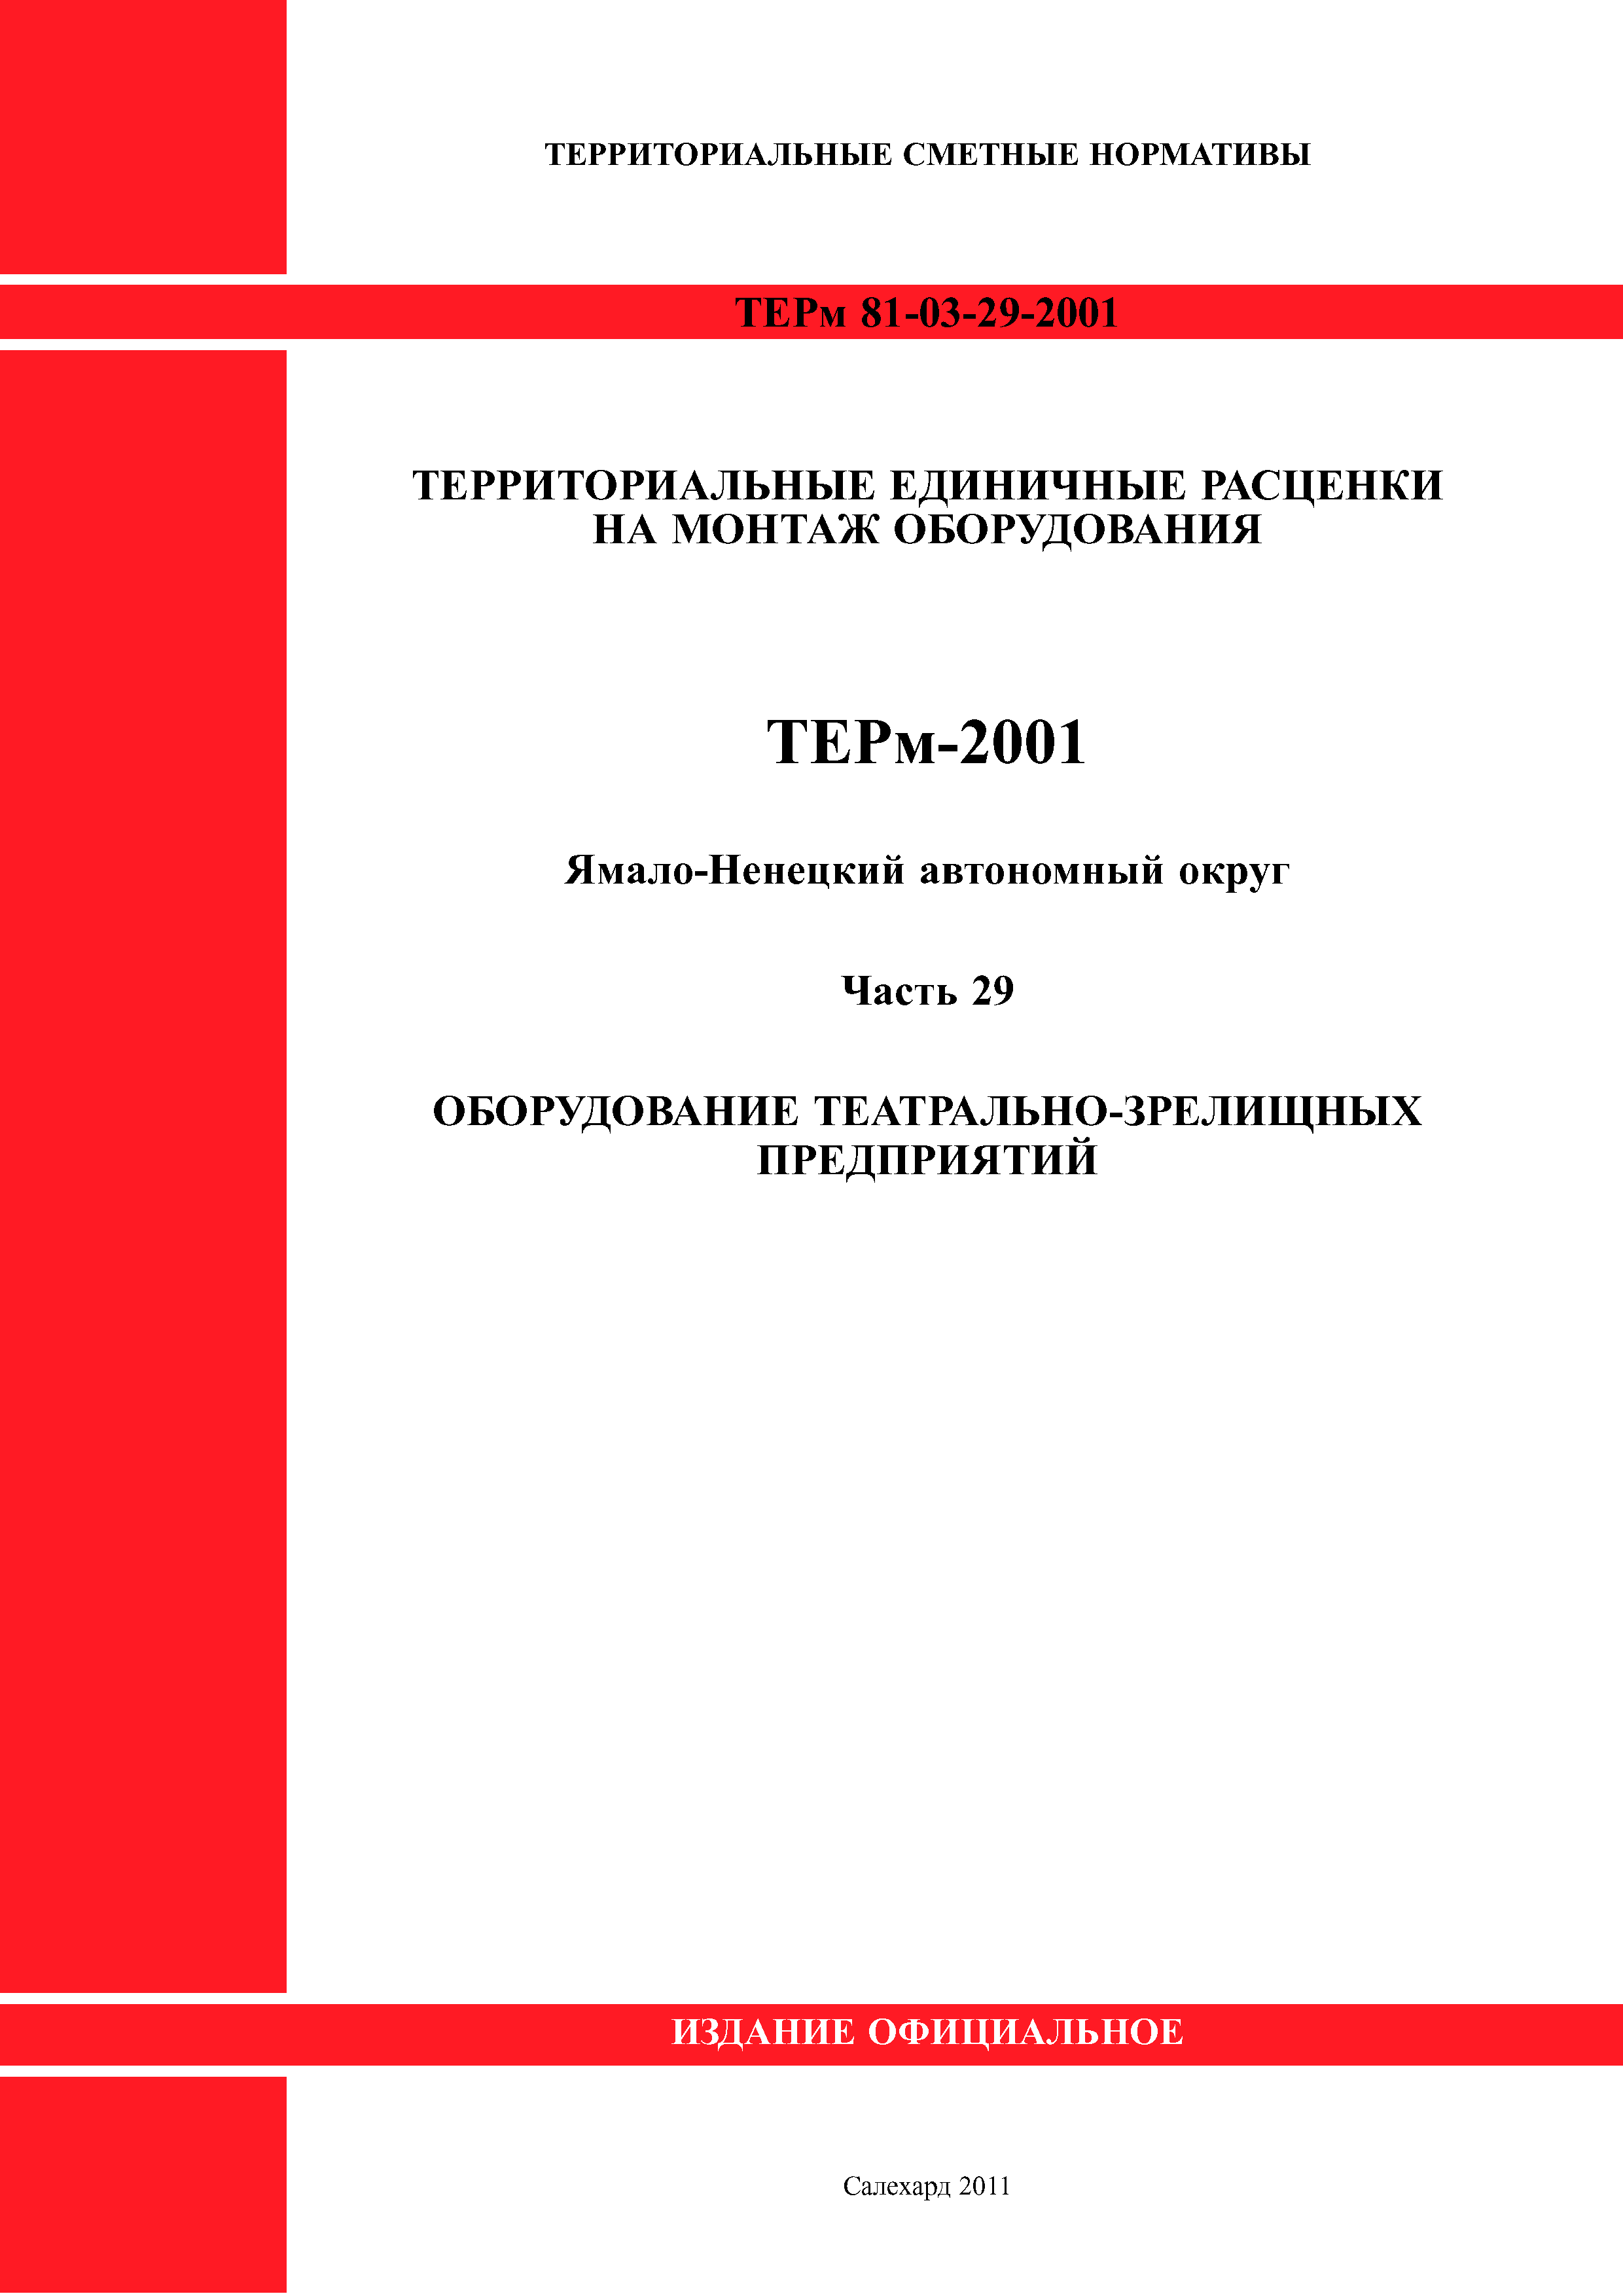 ТЕРм Ямало-Ненецкий автономный округ 29-2001